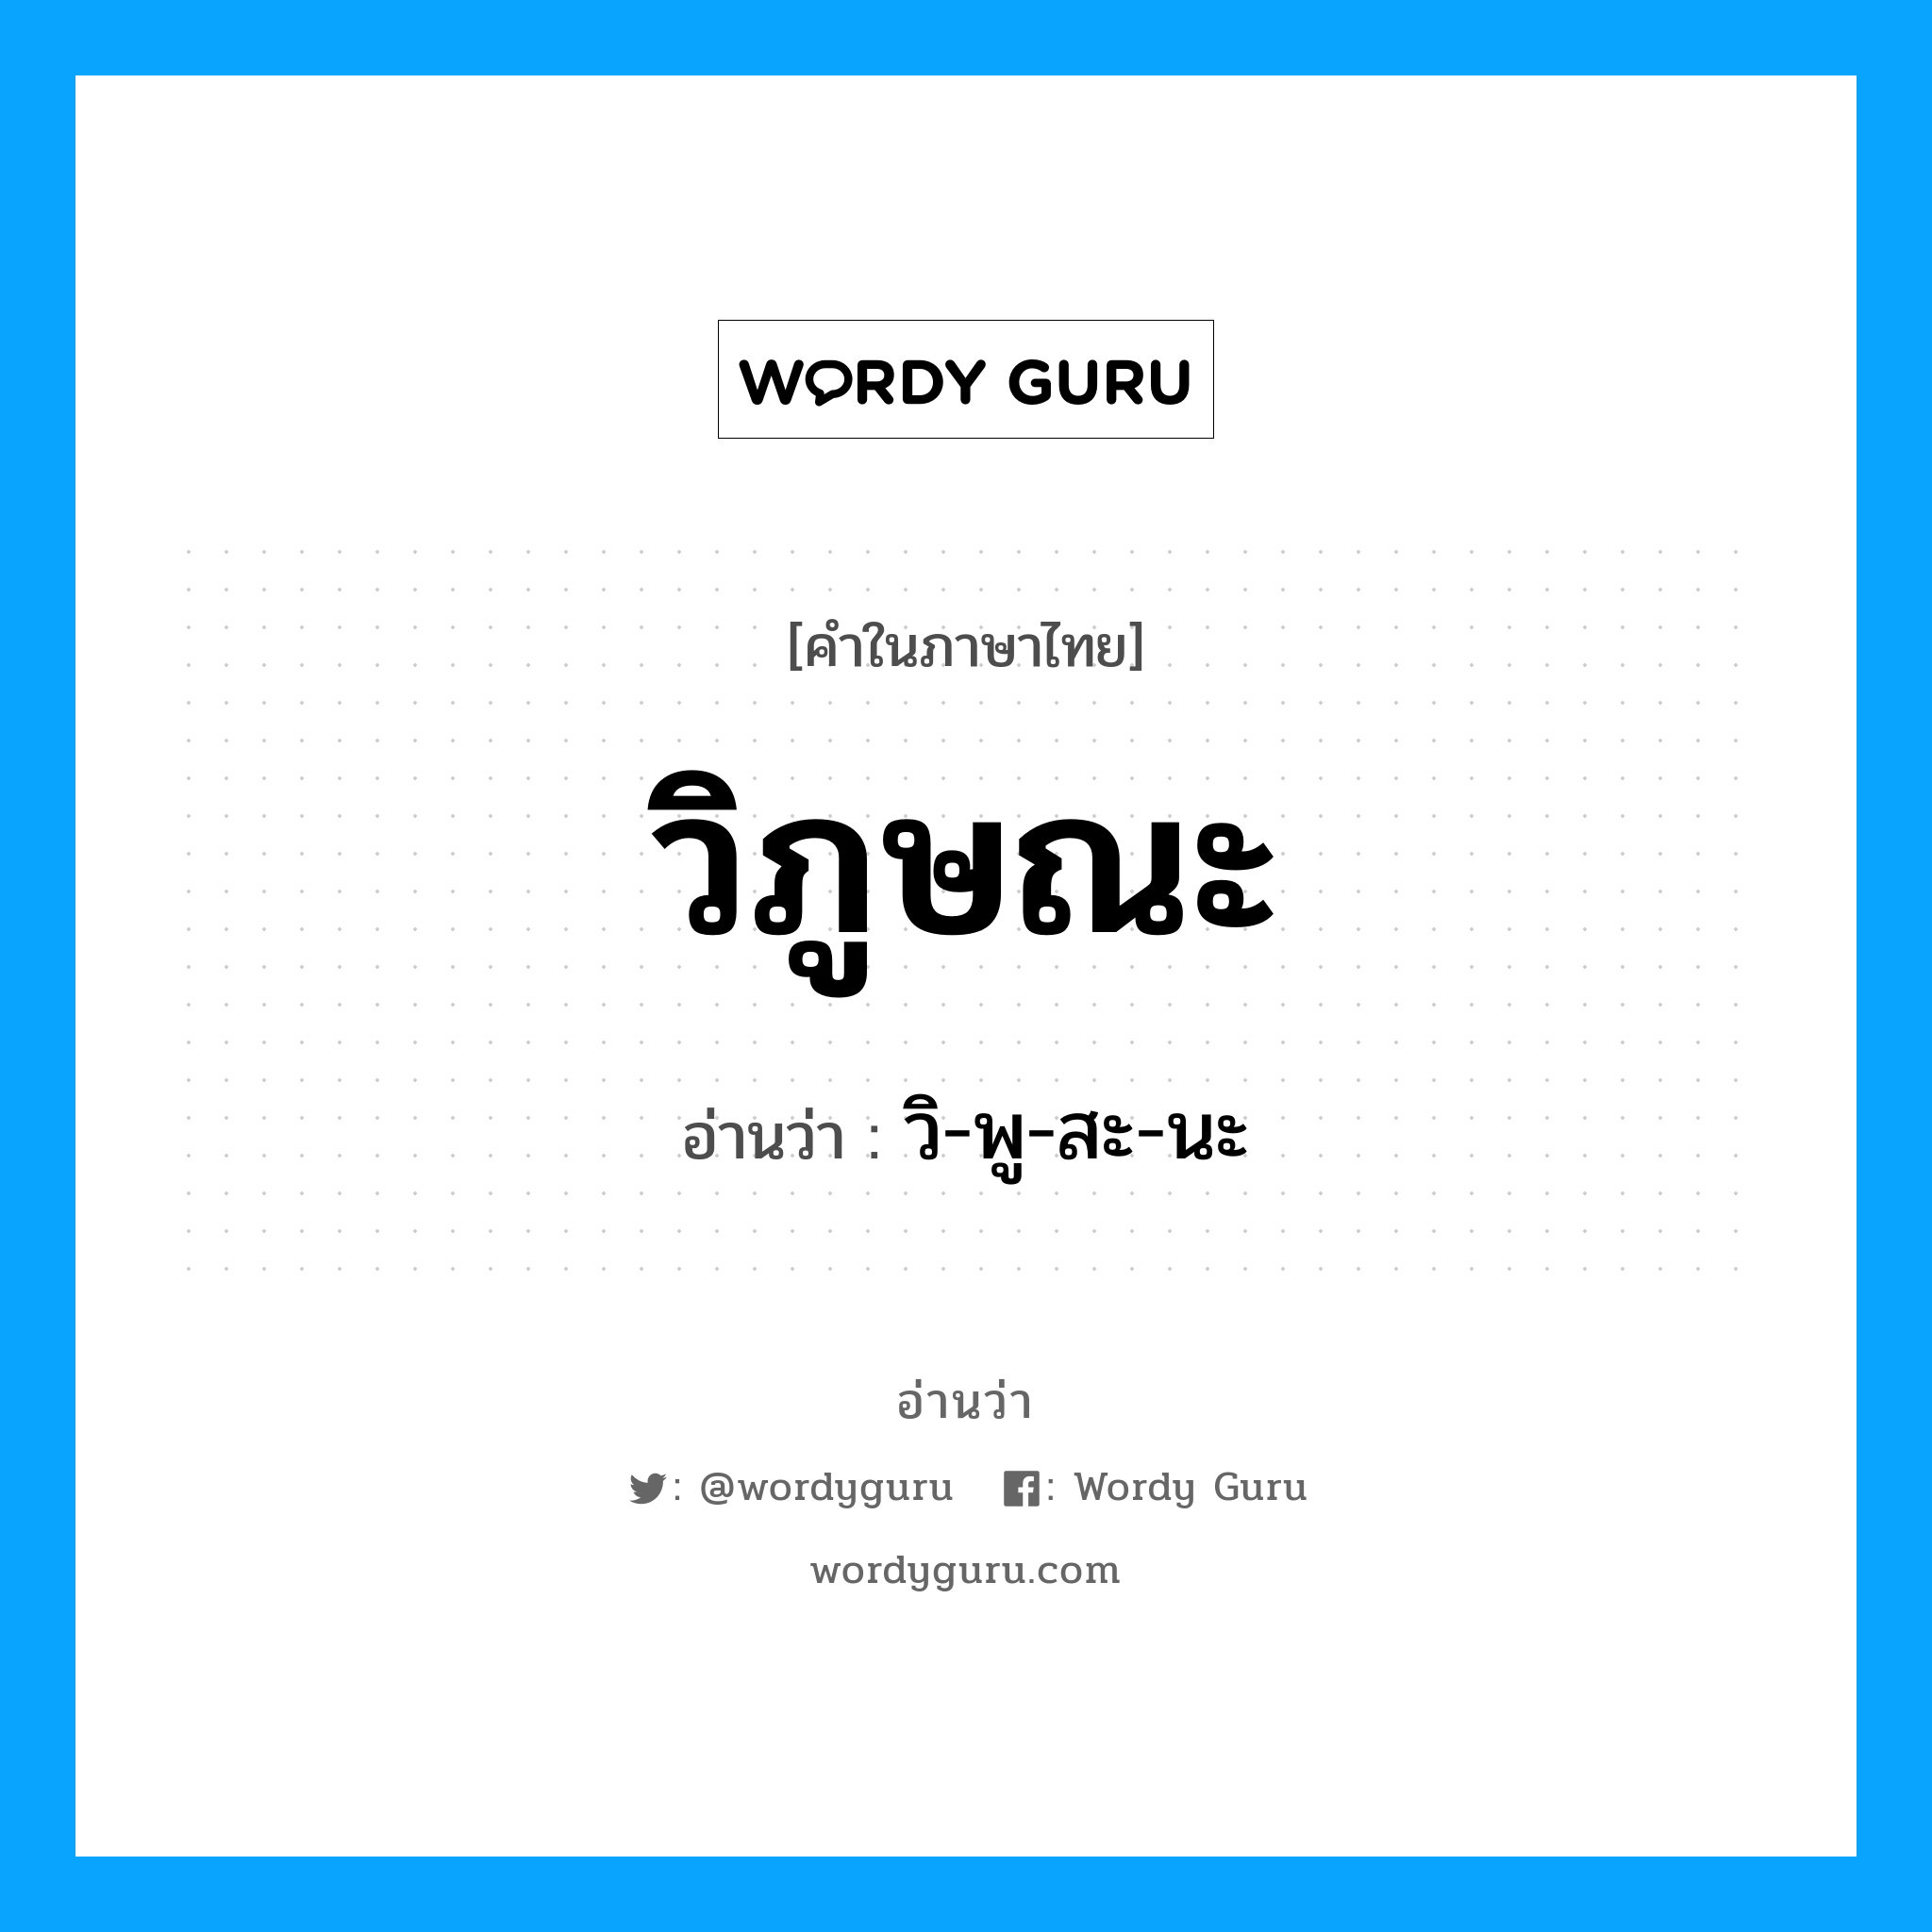 วิ-พู-สะ-นะ เป็นคำอ่านของคำไหน?, คำในภาษาไทย วิ-พู-สะ-นะ อ่านว่า วิภูษณะ